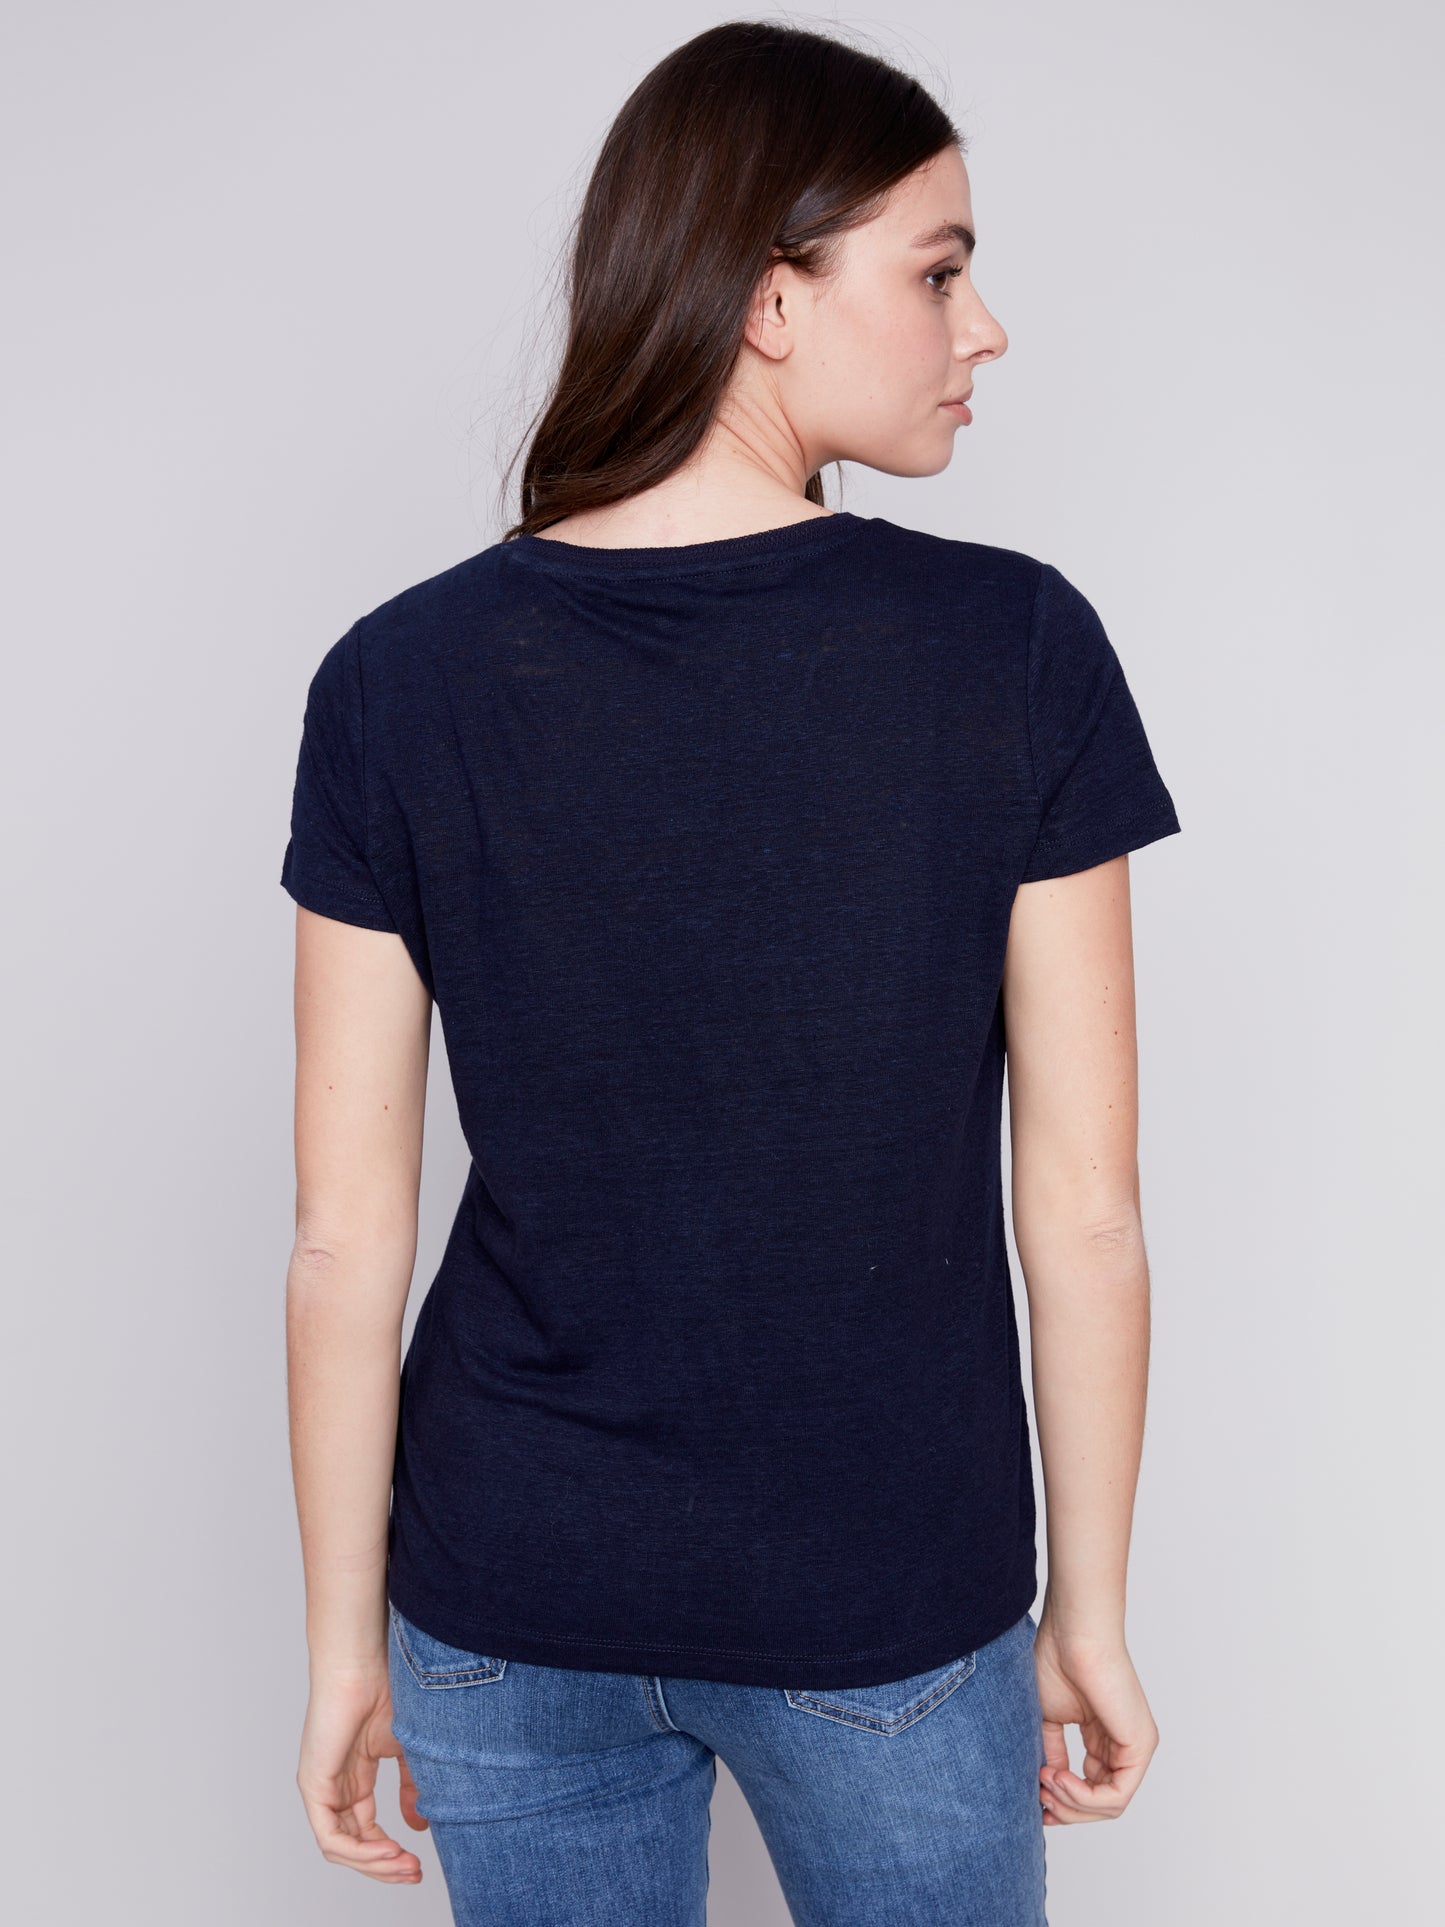 Short Sleeves V Neck Linen T Shirt - Navy